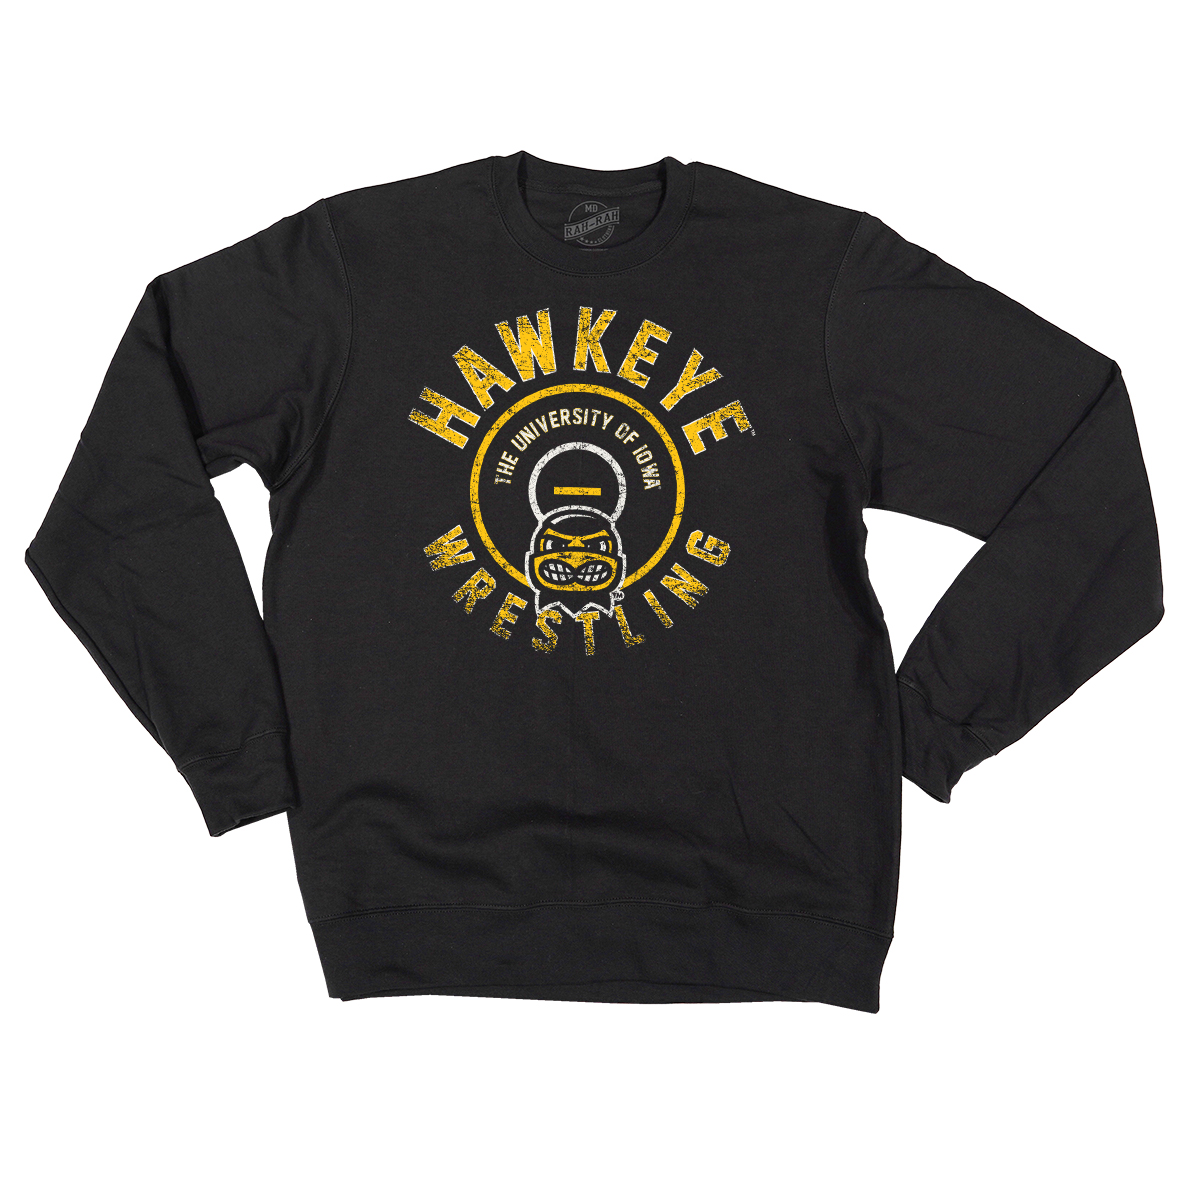 Hawkeye Wrestling Crewneck Sweatshirt-Black - Adcraft USA